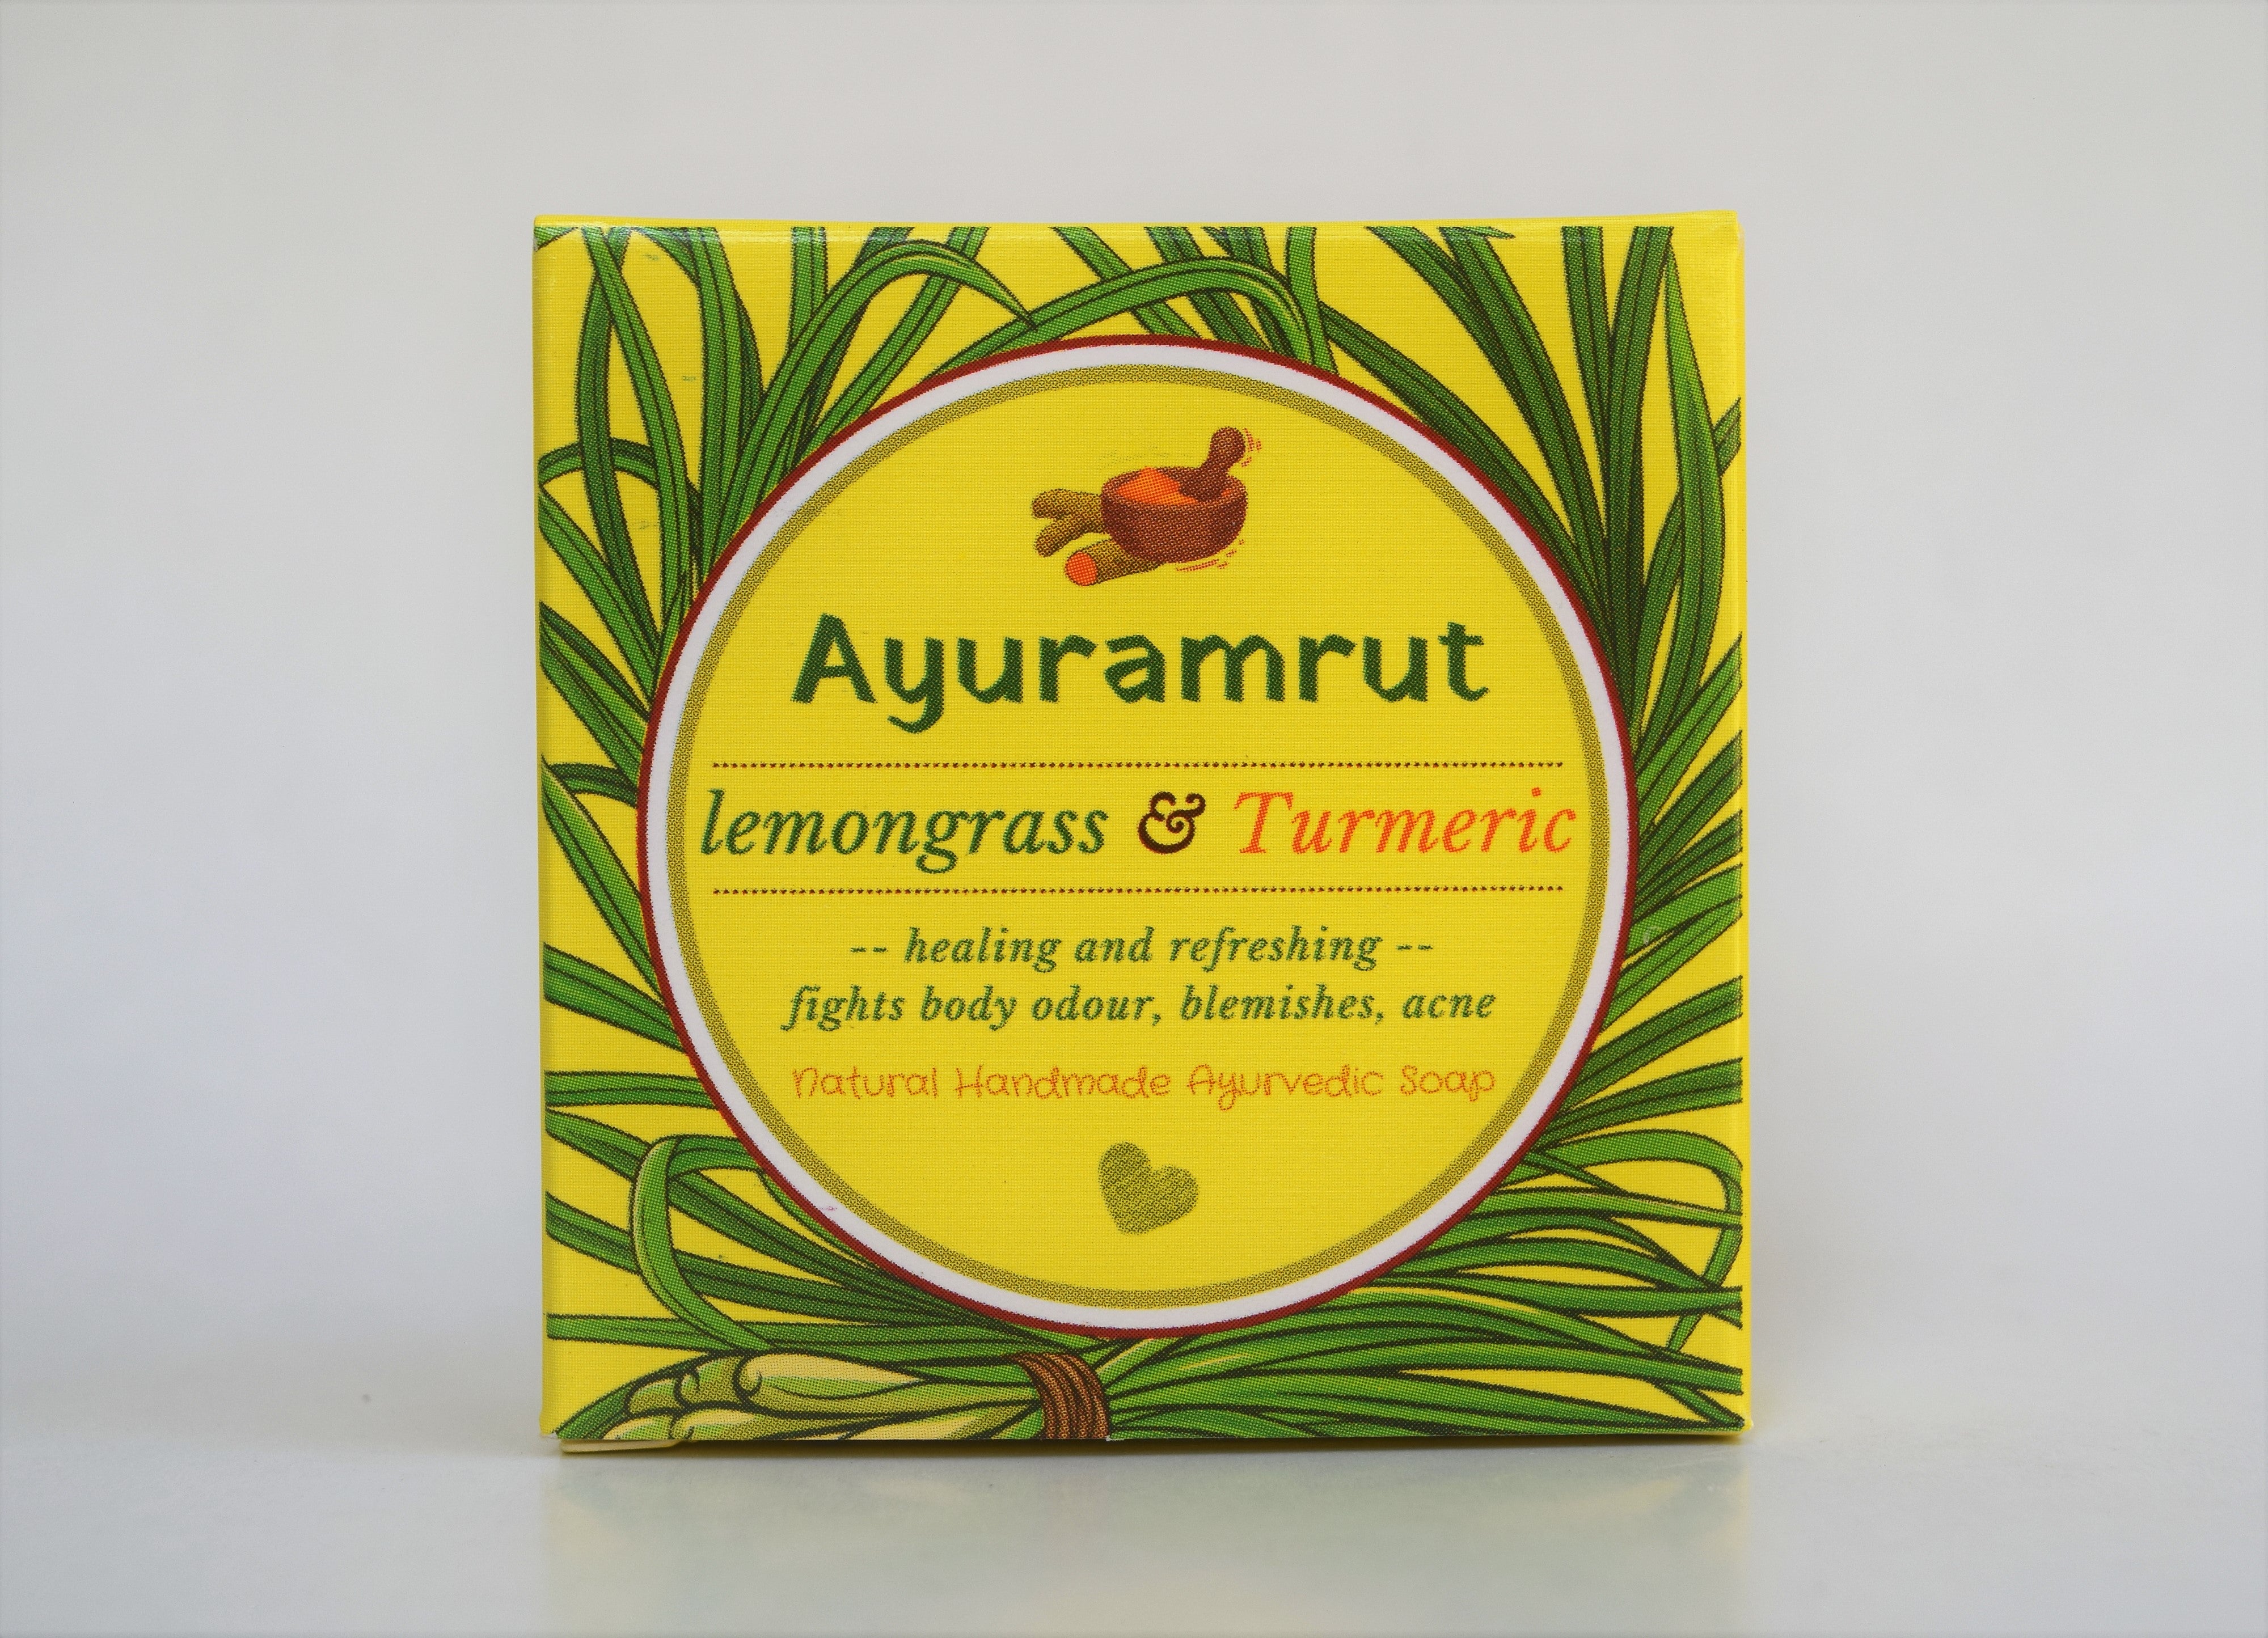 Ayuramrut Lemongrass and Turmeric Natural Handmade Ayurvedic Soap (Pack of 4)